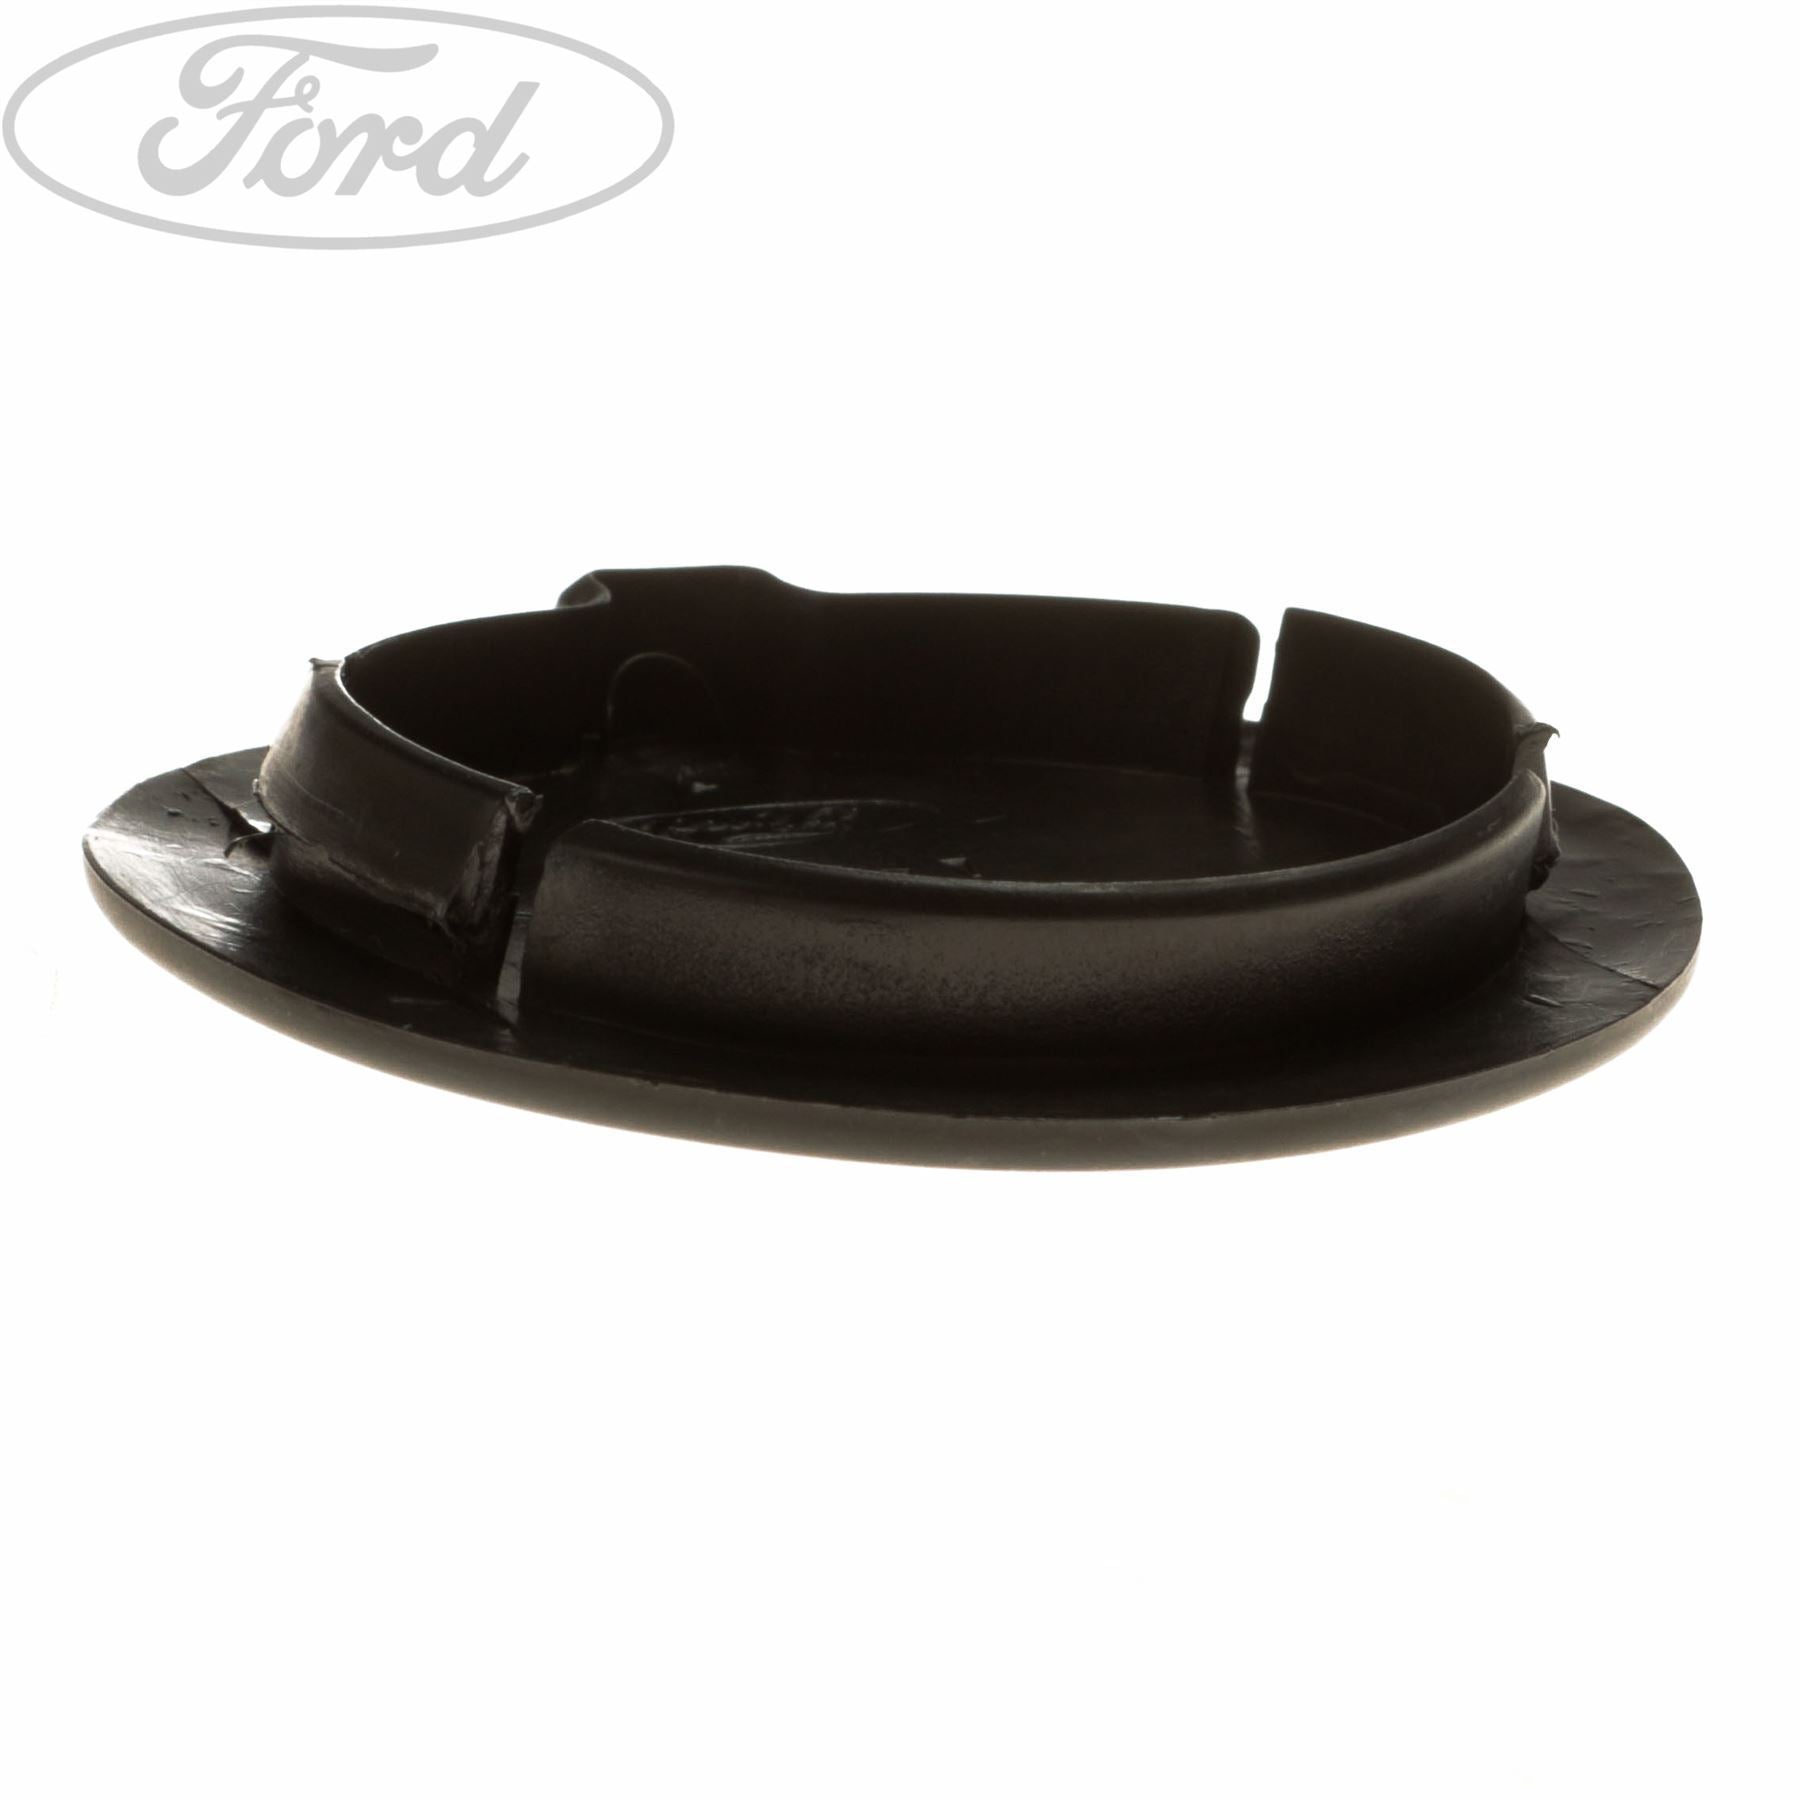 Abschlepphaken Abdeckung vorne passt für Ford Focus III ab 15